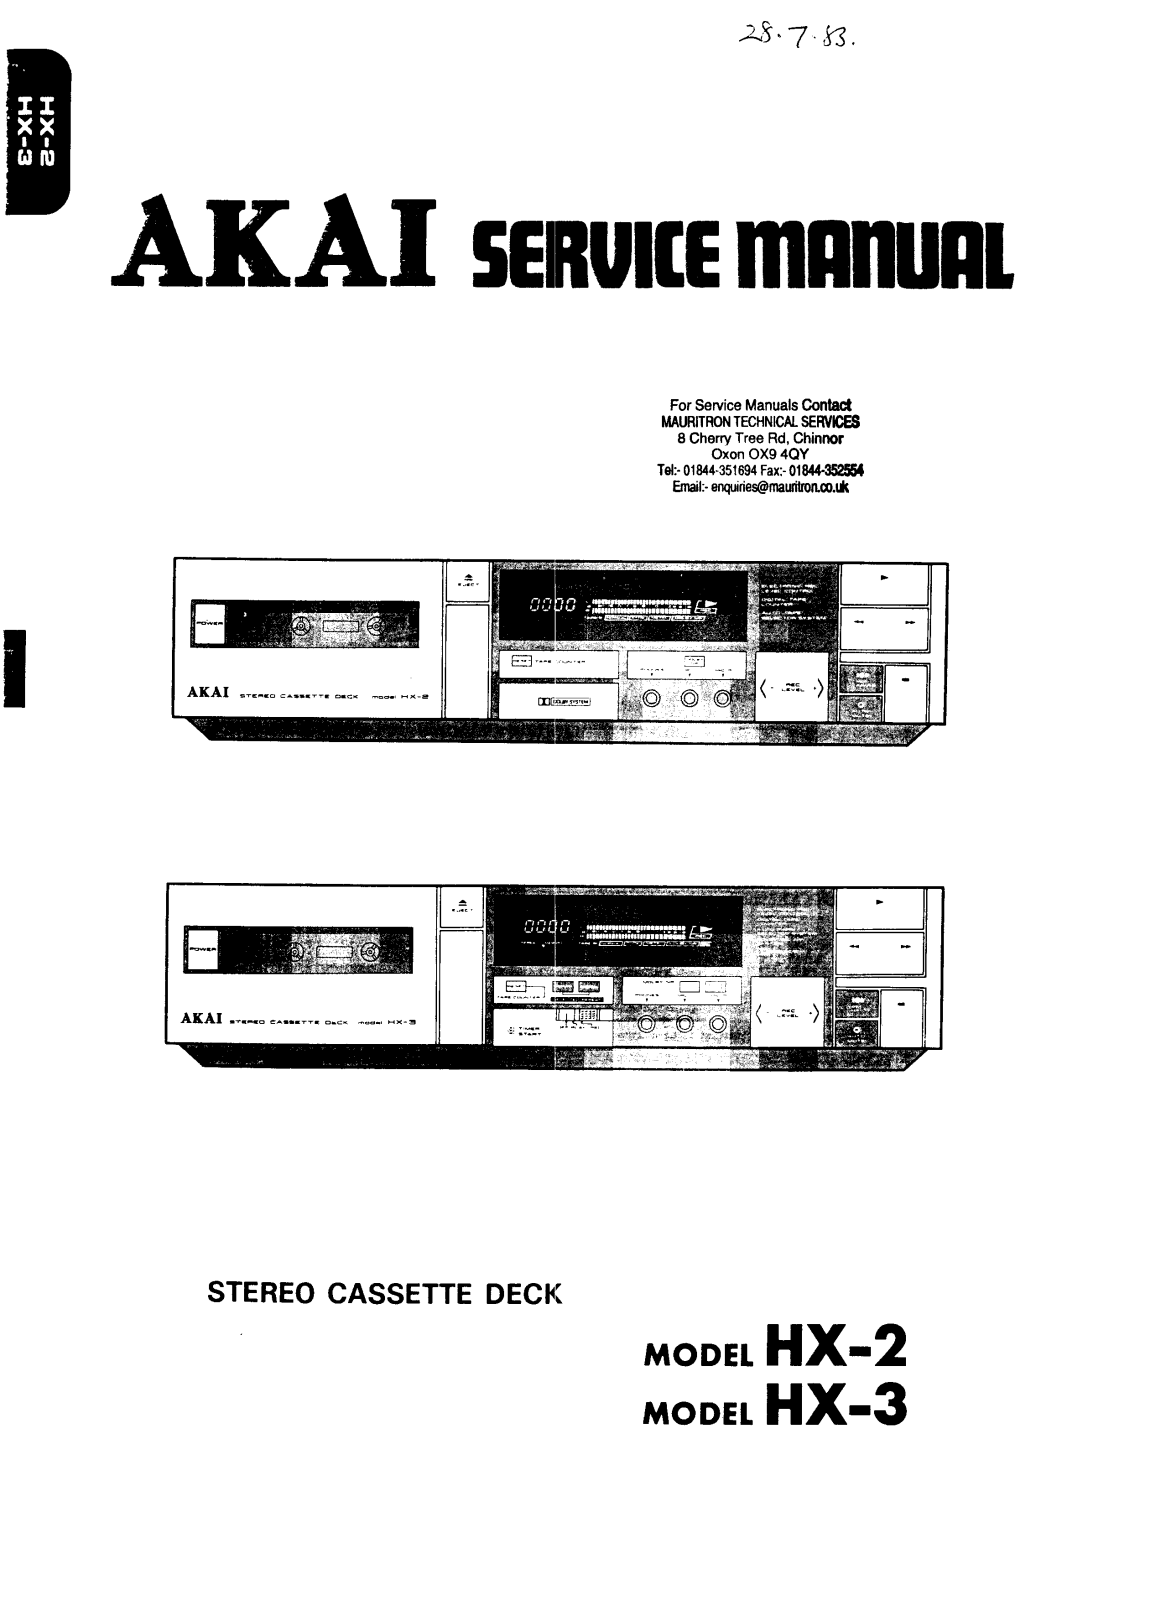 Akai HX-2, HX-3 Service manual